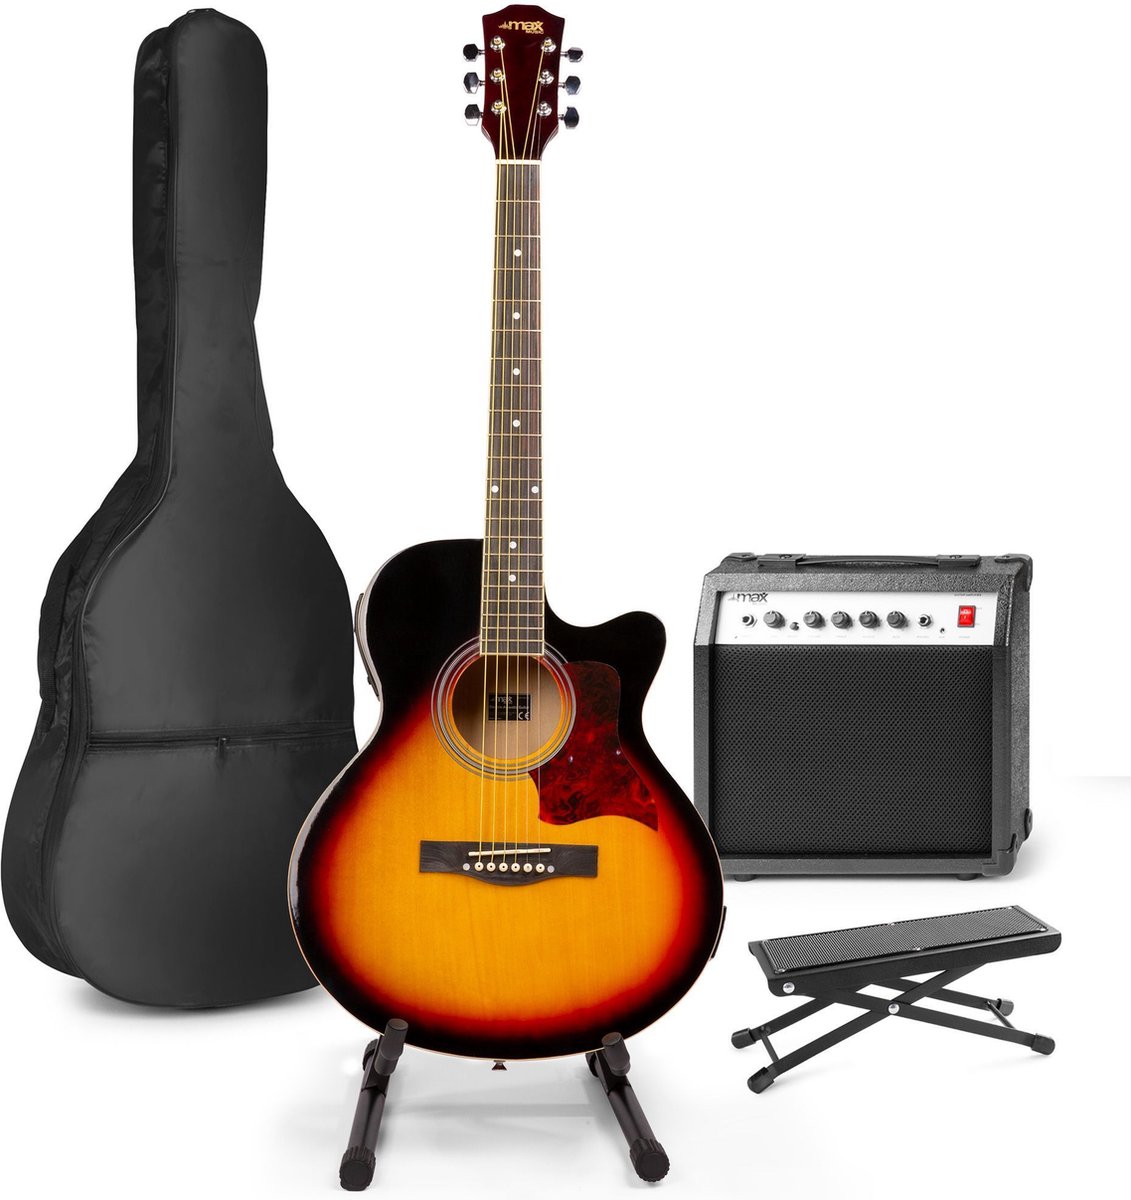 Elektrisch akoestische gitaar - MAX ShowKit gitaarset met 40W gitaar versterker, gitaar standaard, gitaar voetenbankje, gitaar stemapparaat, gitaartas en plectrum - Sunburst